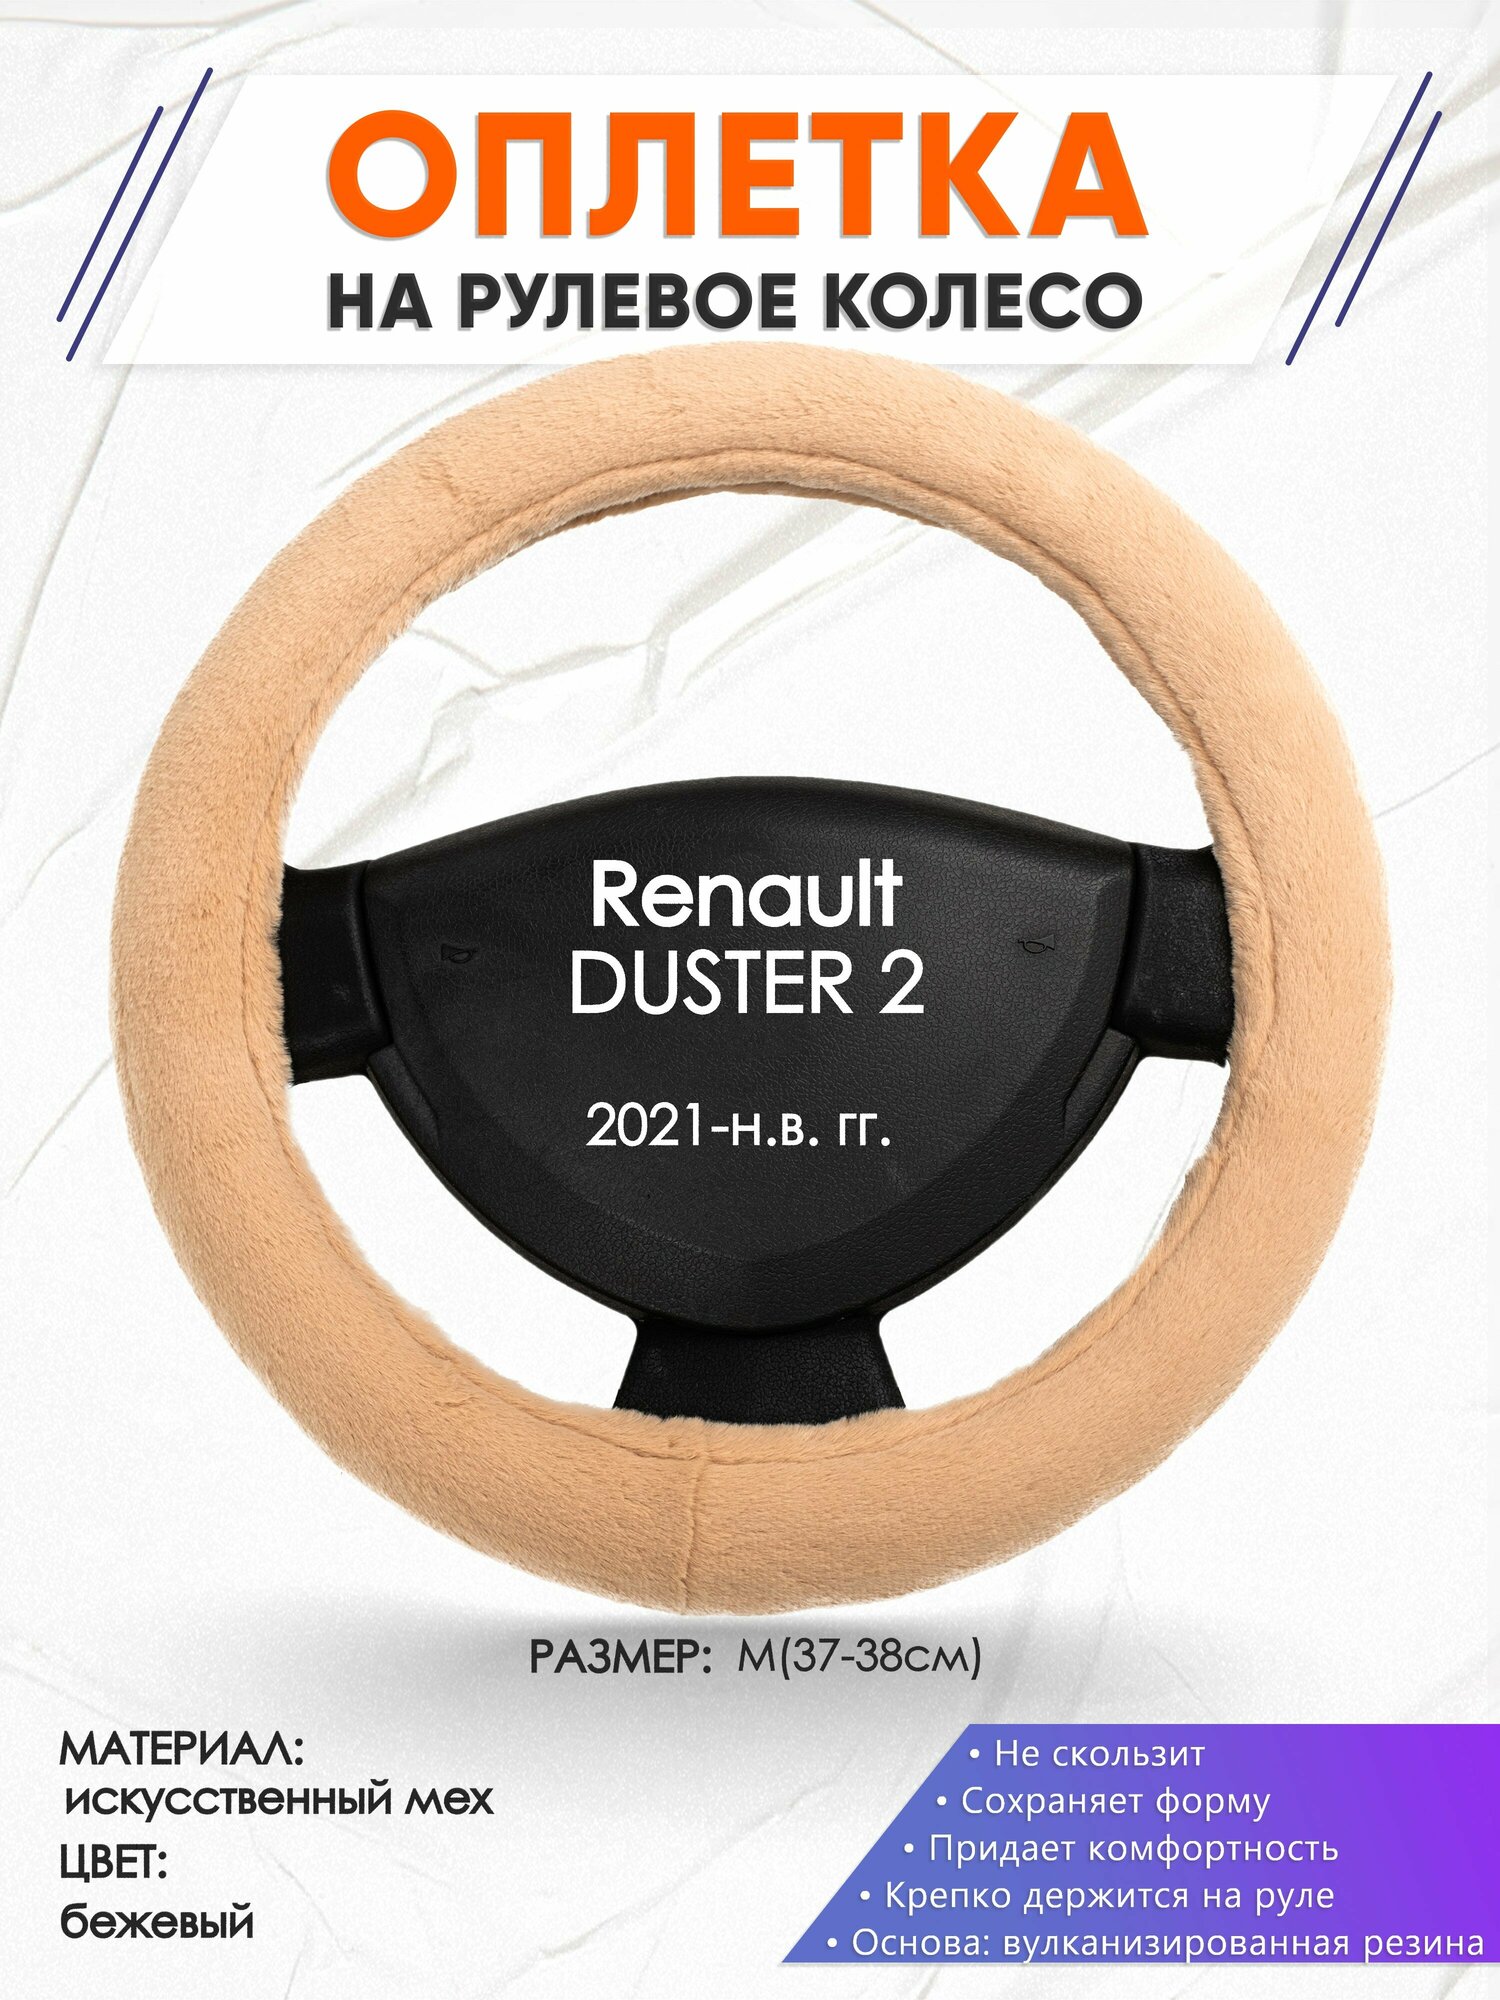 Оплетка наруль для Renault DUSTER 2(Рено Дастер 2) 2021-н. в. годов выпуска размер M(37-38см) Искусственный мех 46